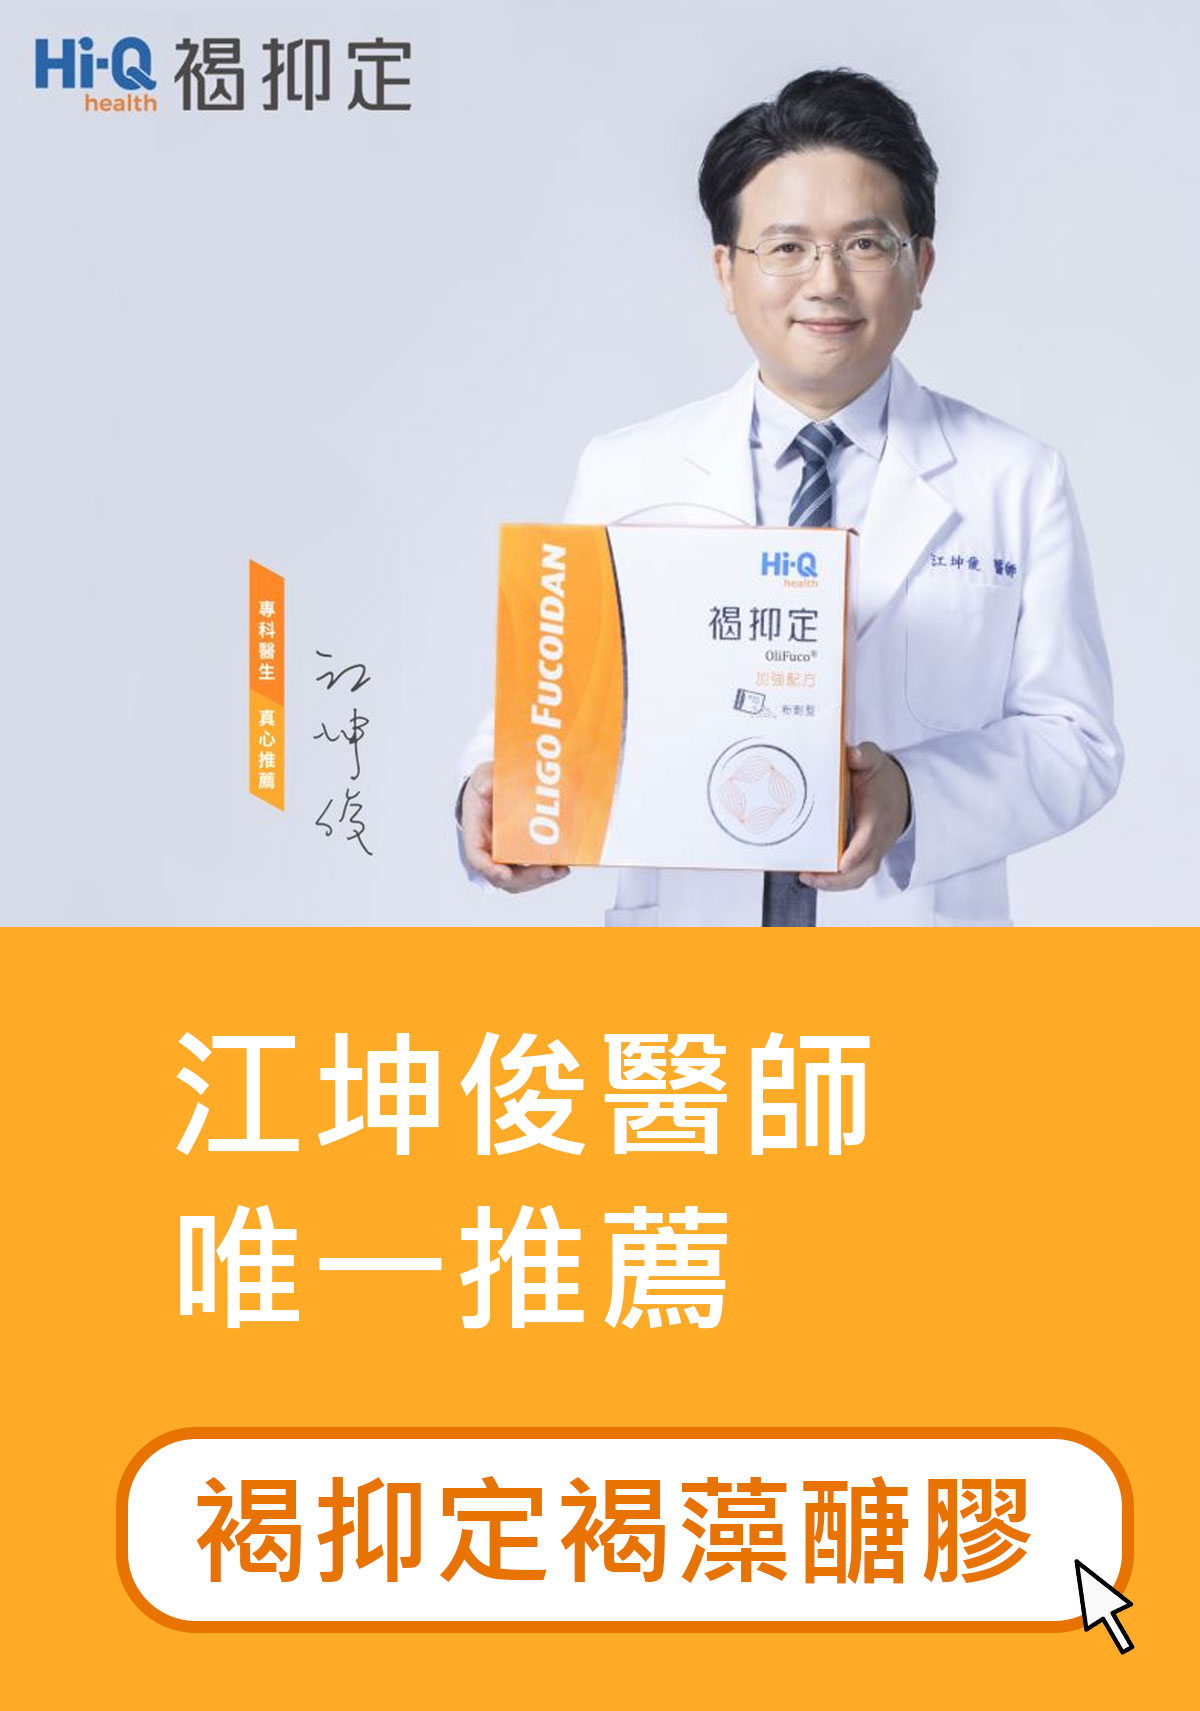 江坤俊醫師唯一推薦的褐抑定褐藻醣膠